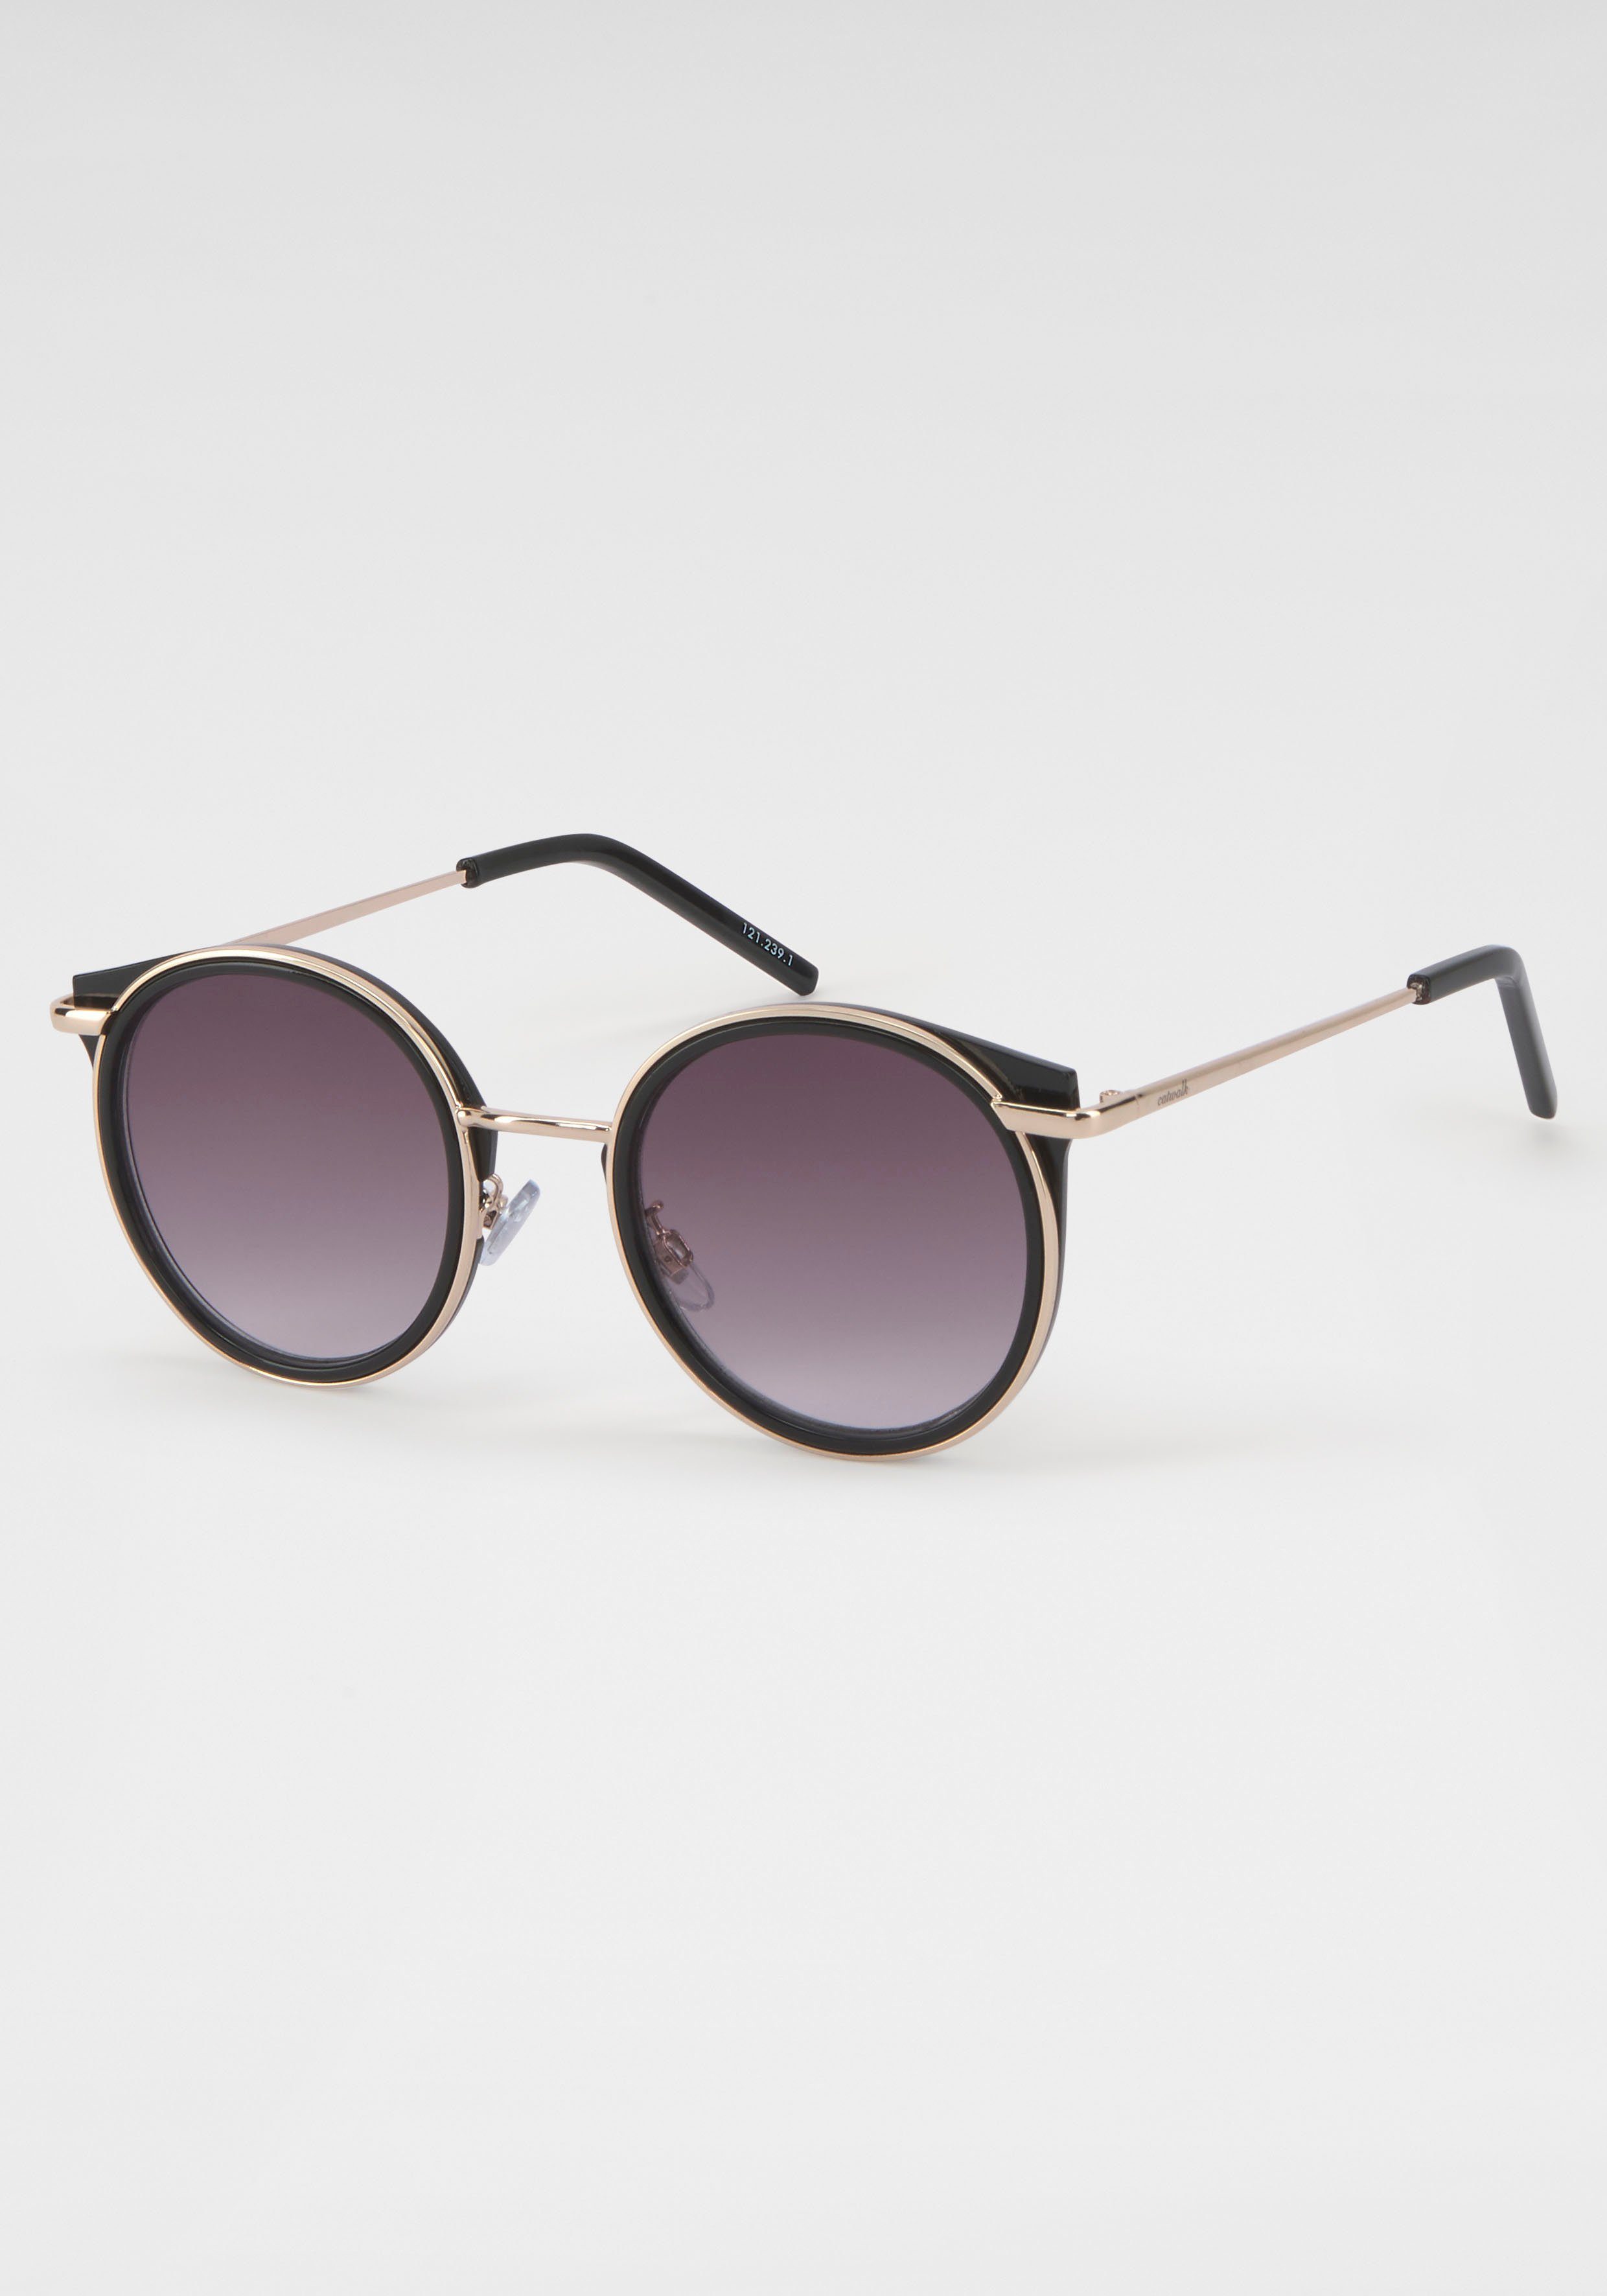 catwalk Eyewear Sonnenbrille online kaufen | OTTO